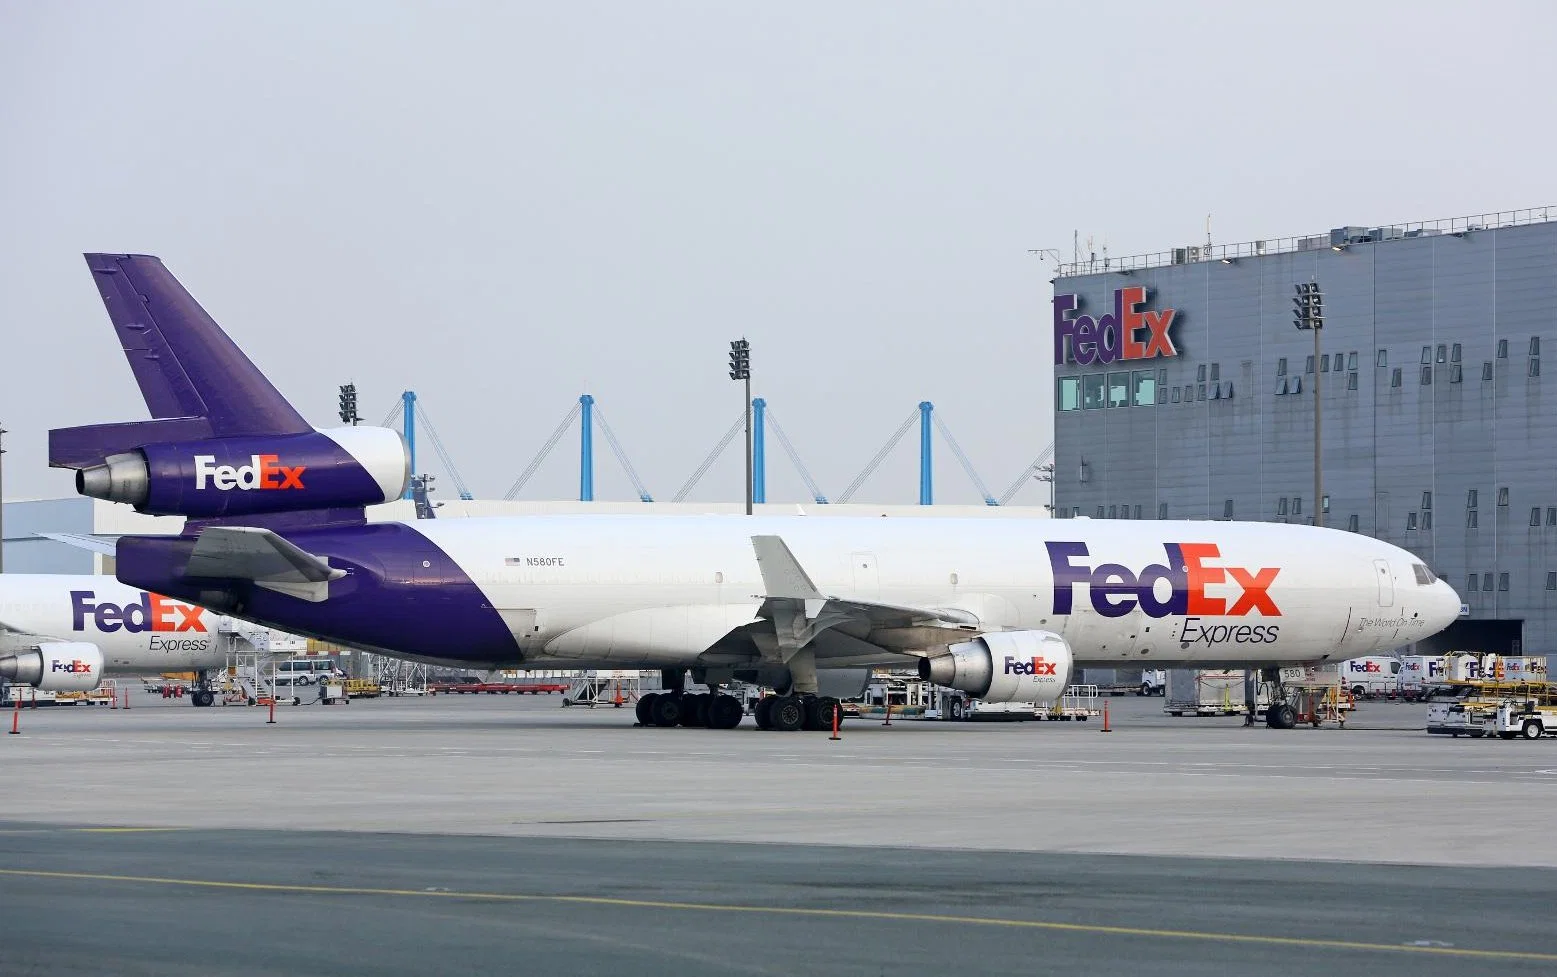 UPS / FedEx Courier Service entrega porta a porta para Georgewashington, Boston, Chicago, Nova Iorque, são Francisco de Guangzhou, Shenzhen, Xangai na China